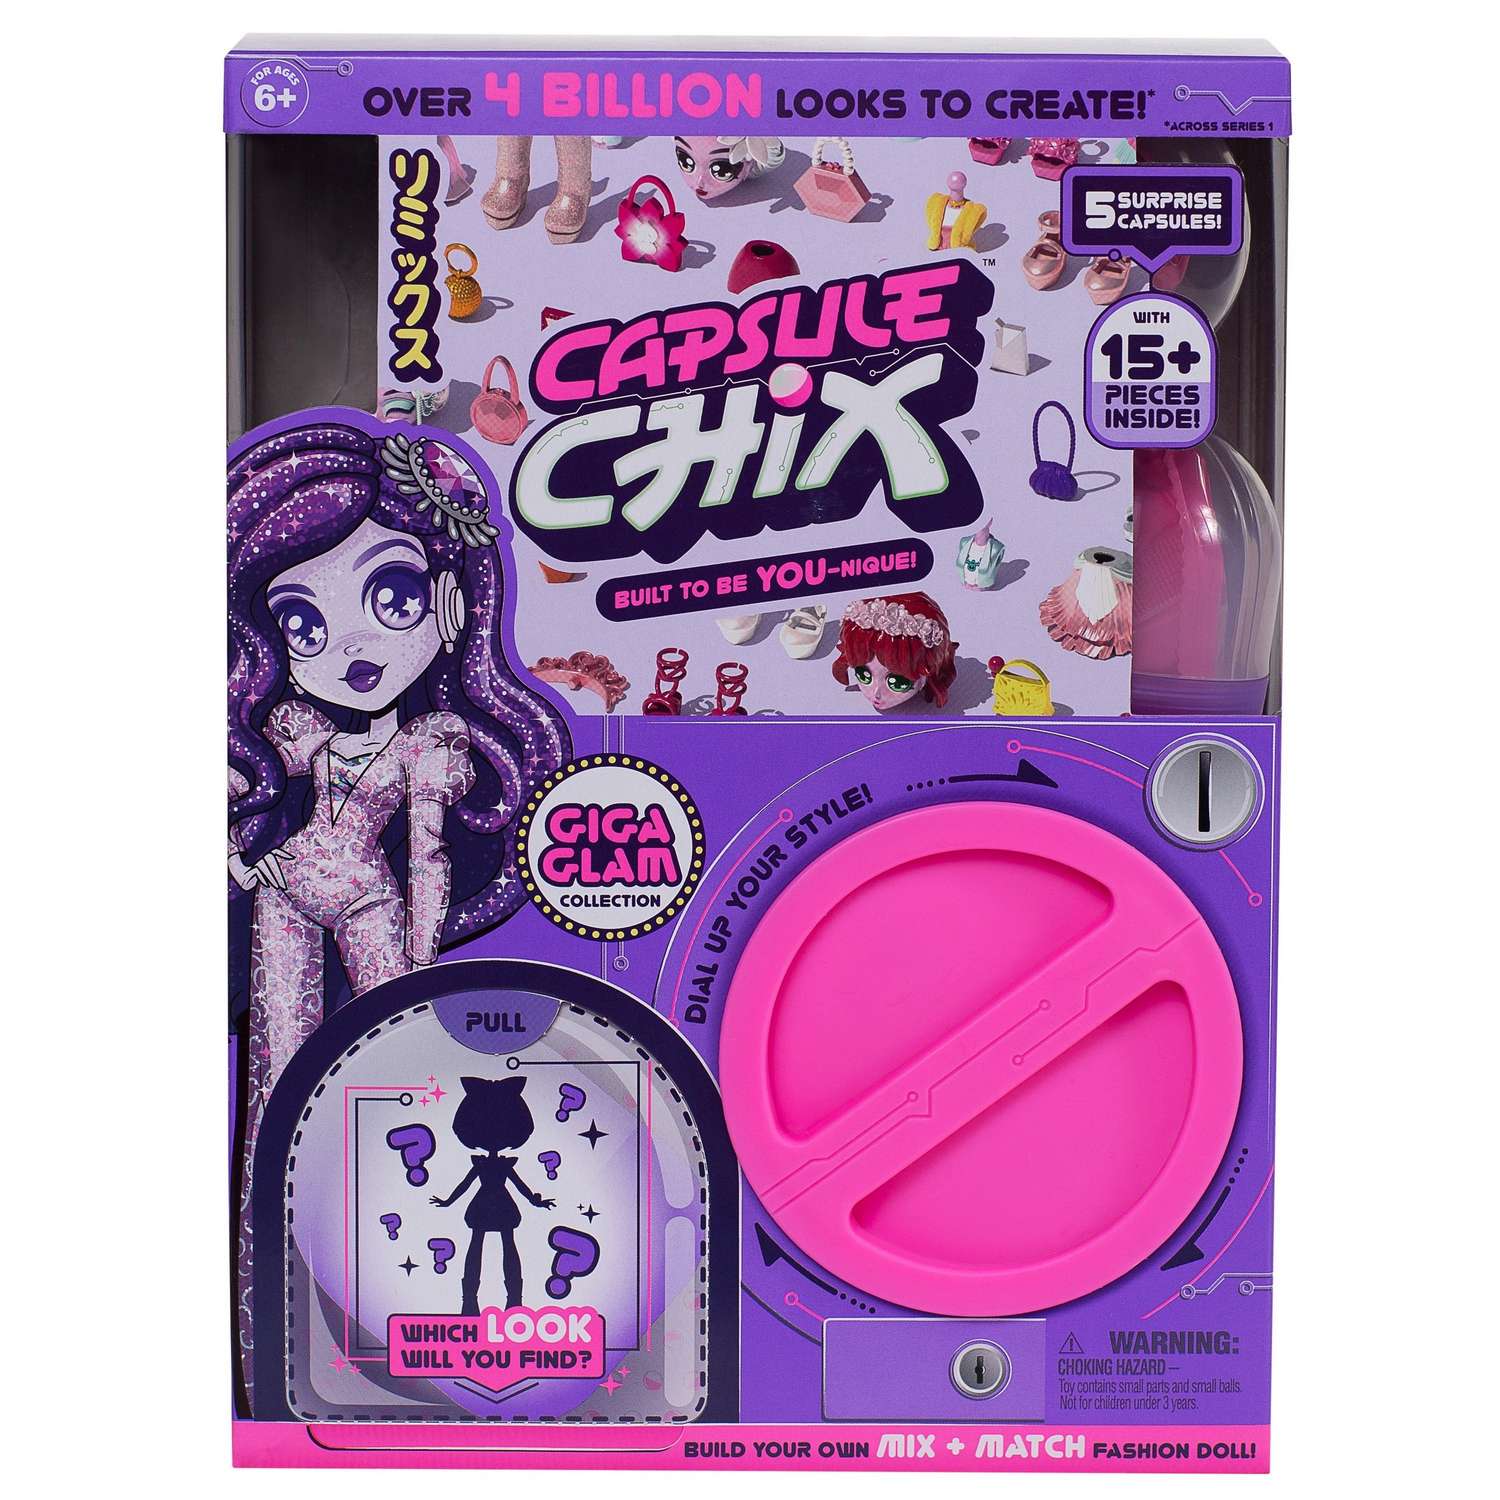 Кукла Capsule chix Гига Глэм в непрозрачной упаковке (Сюрприз) 59201 59201 - фото 1